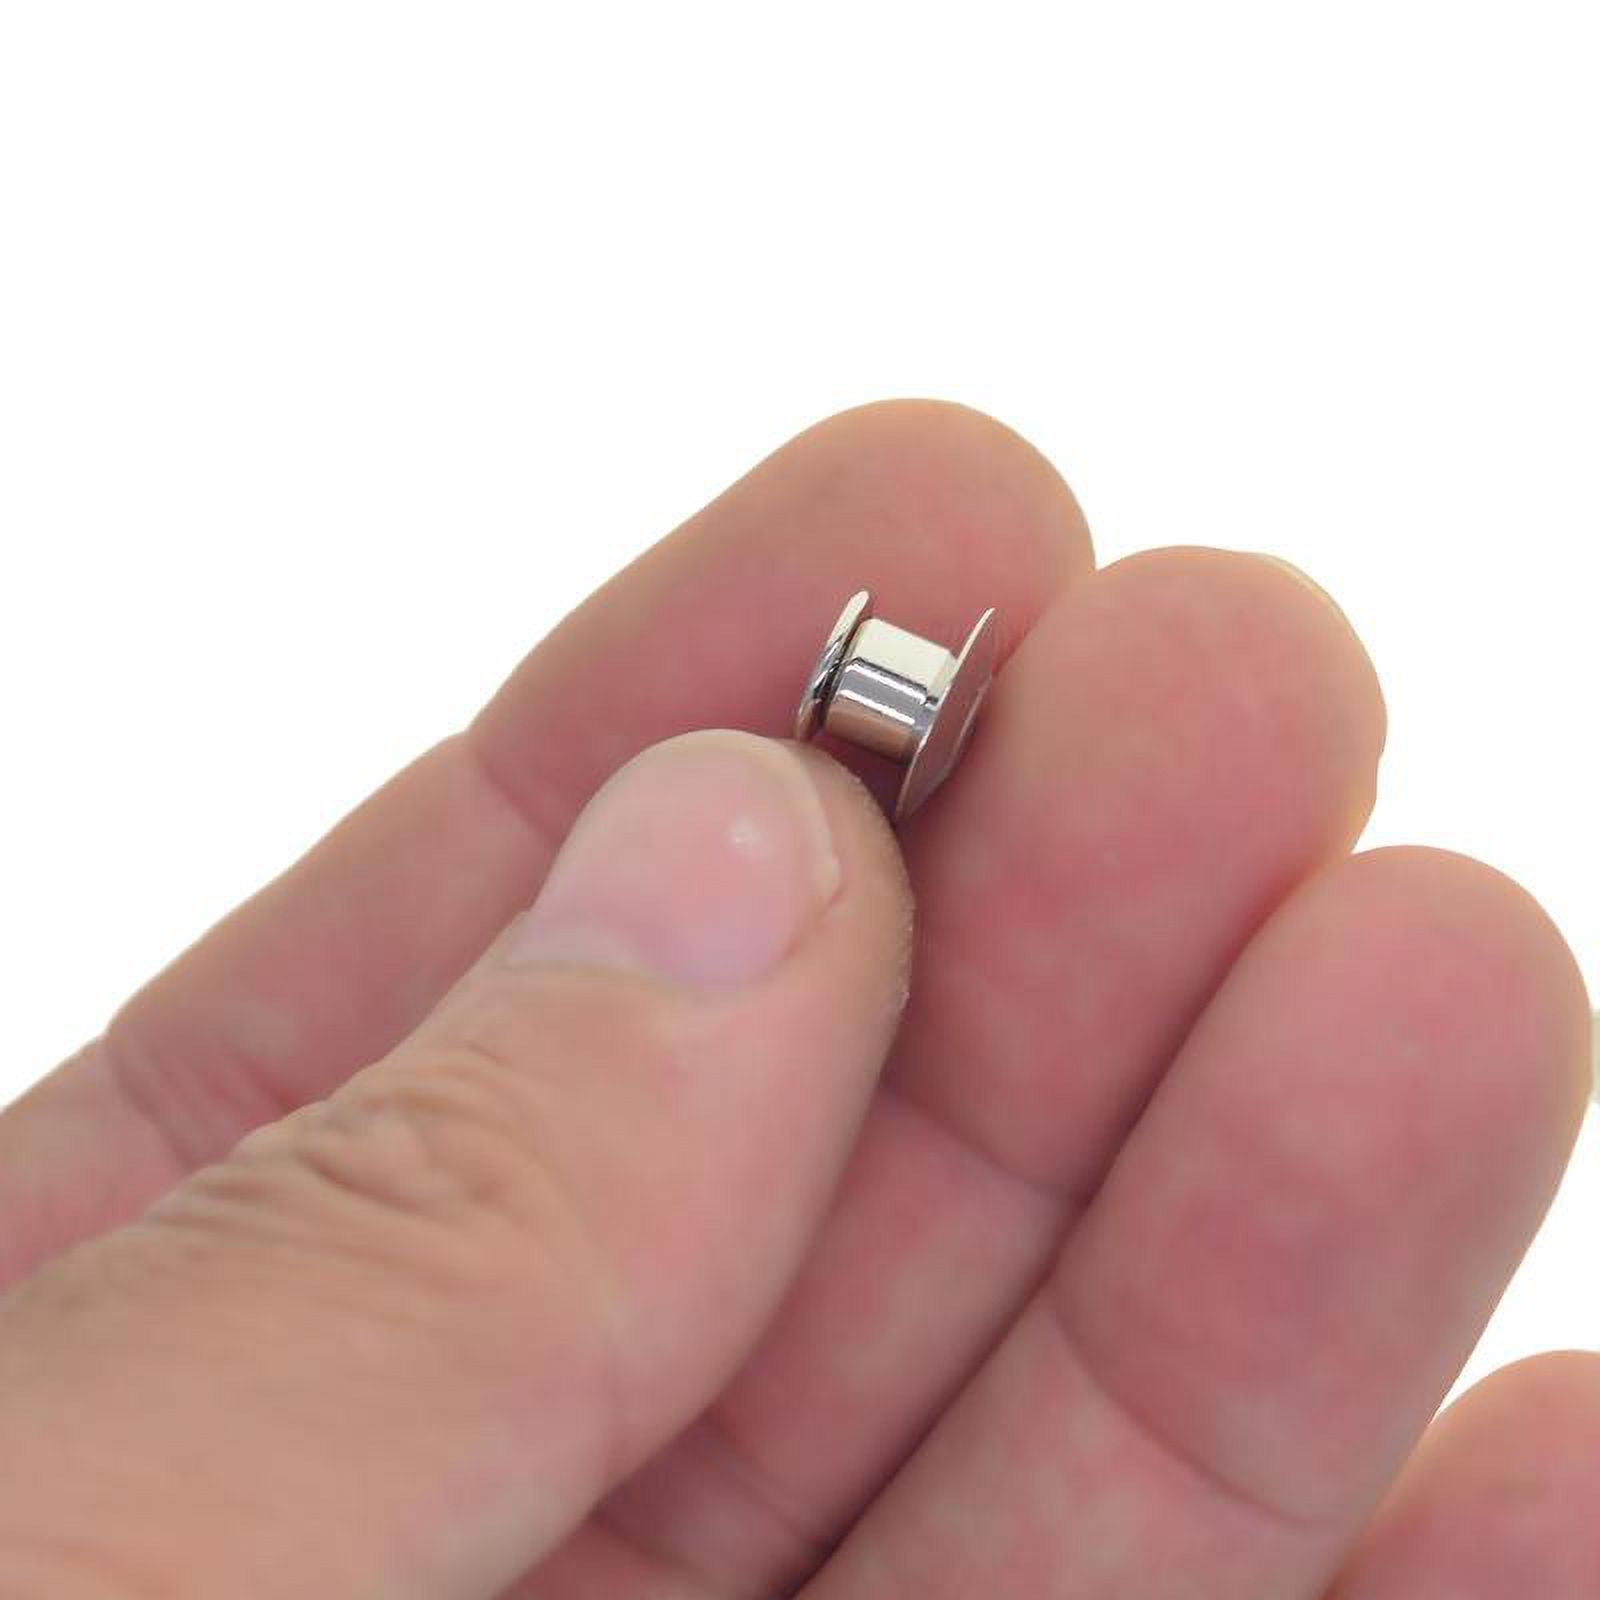 24Pcs Metal Pin Backs Locking Pin Keepers for Enamel Pins Hat Uniform  Badges